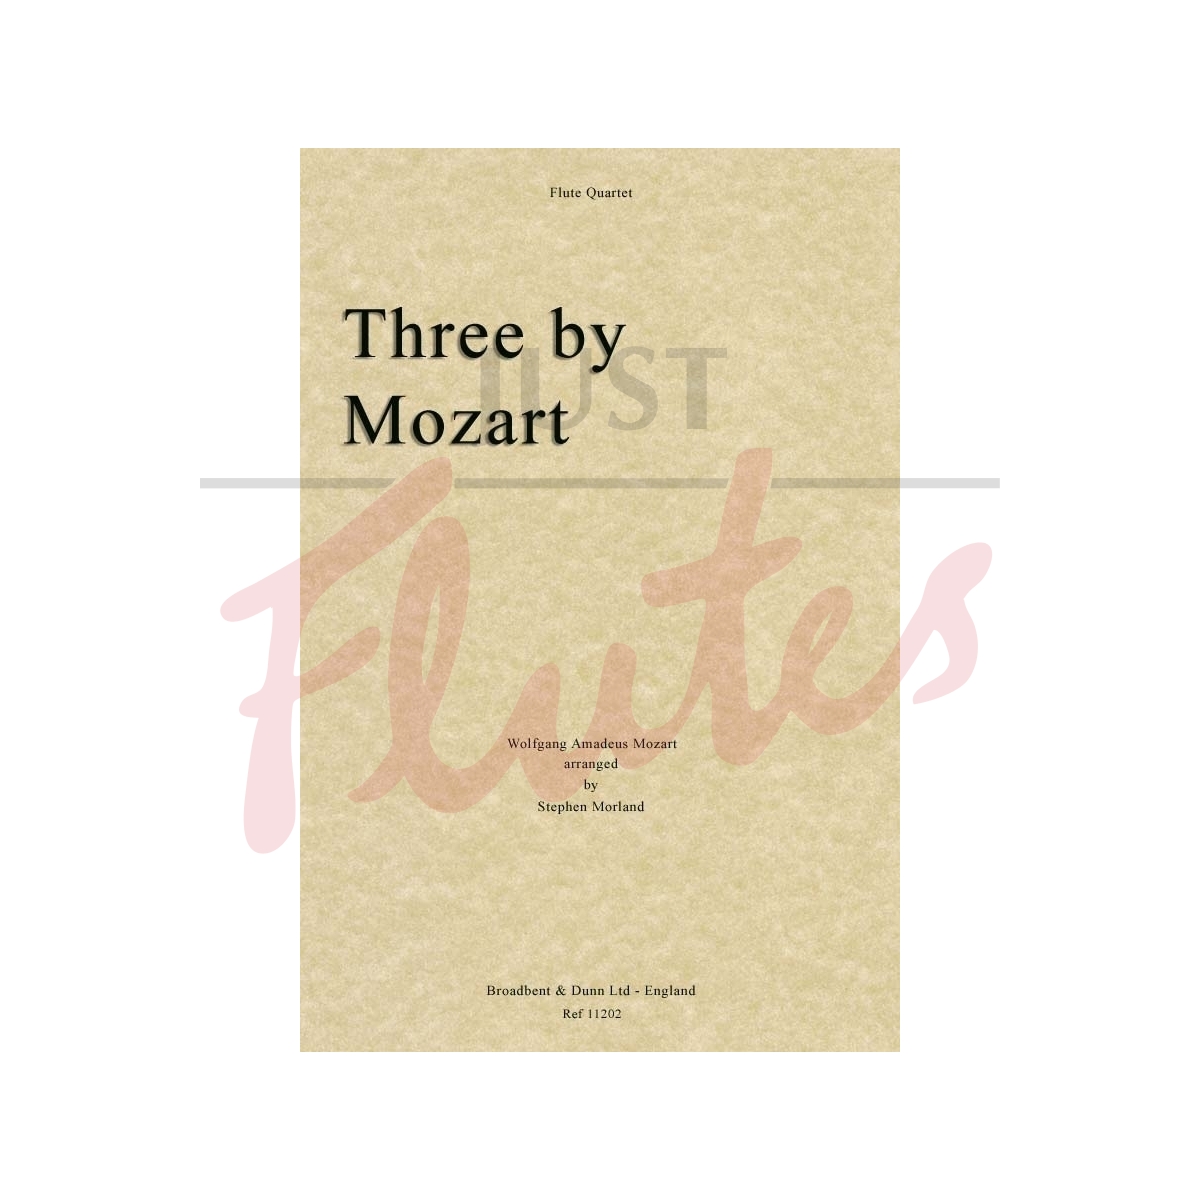 Three by Mozart